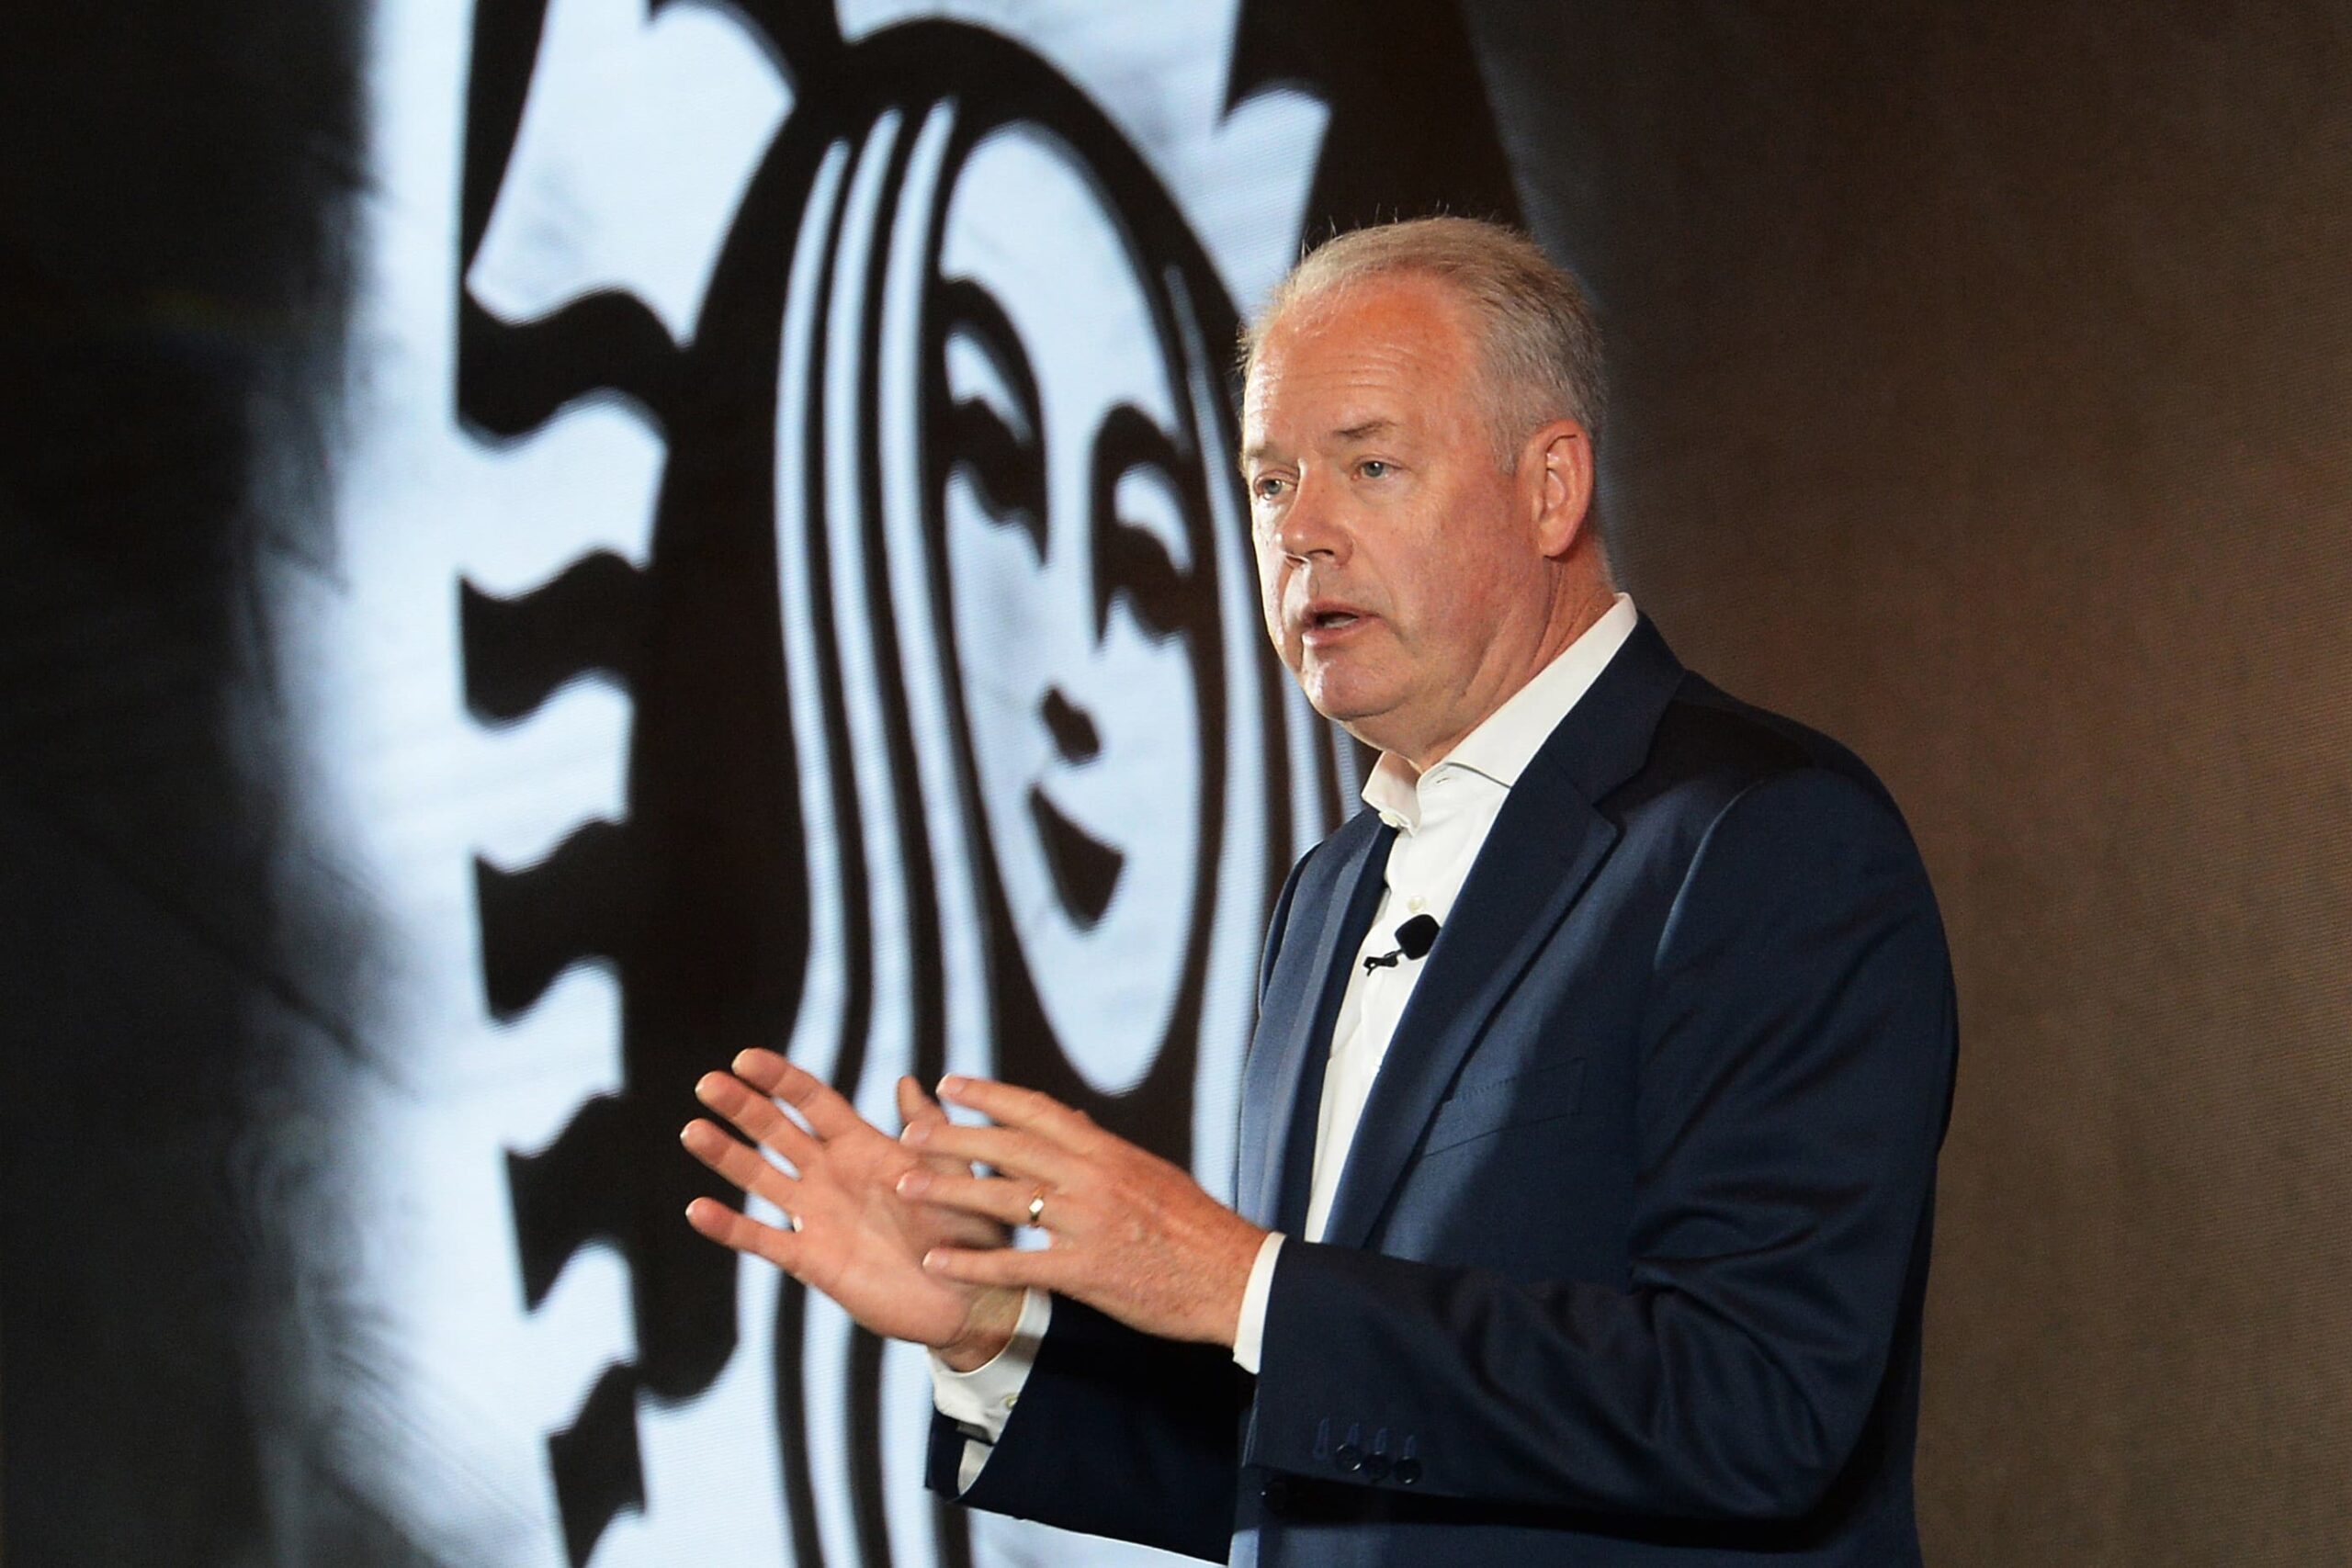 Starbucks (SBUX) Q2 2021 earnings beat